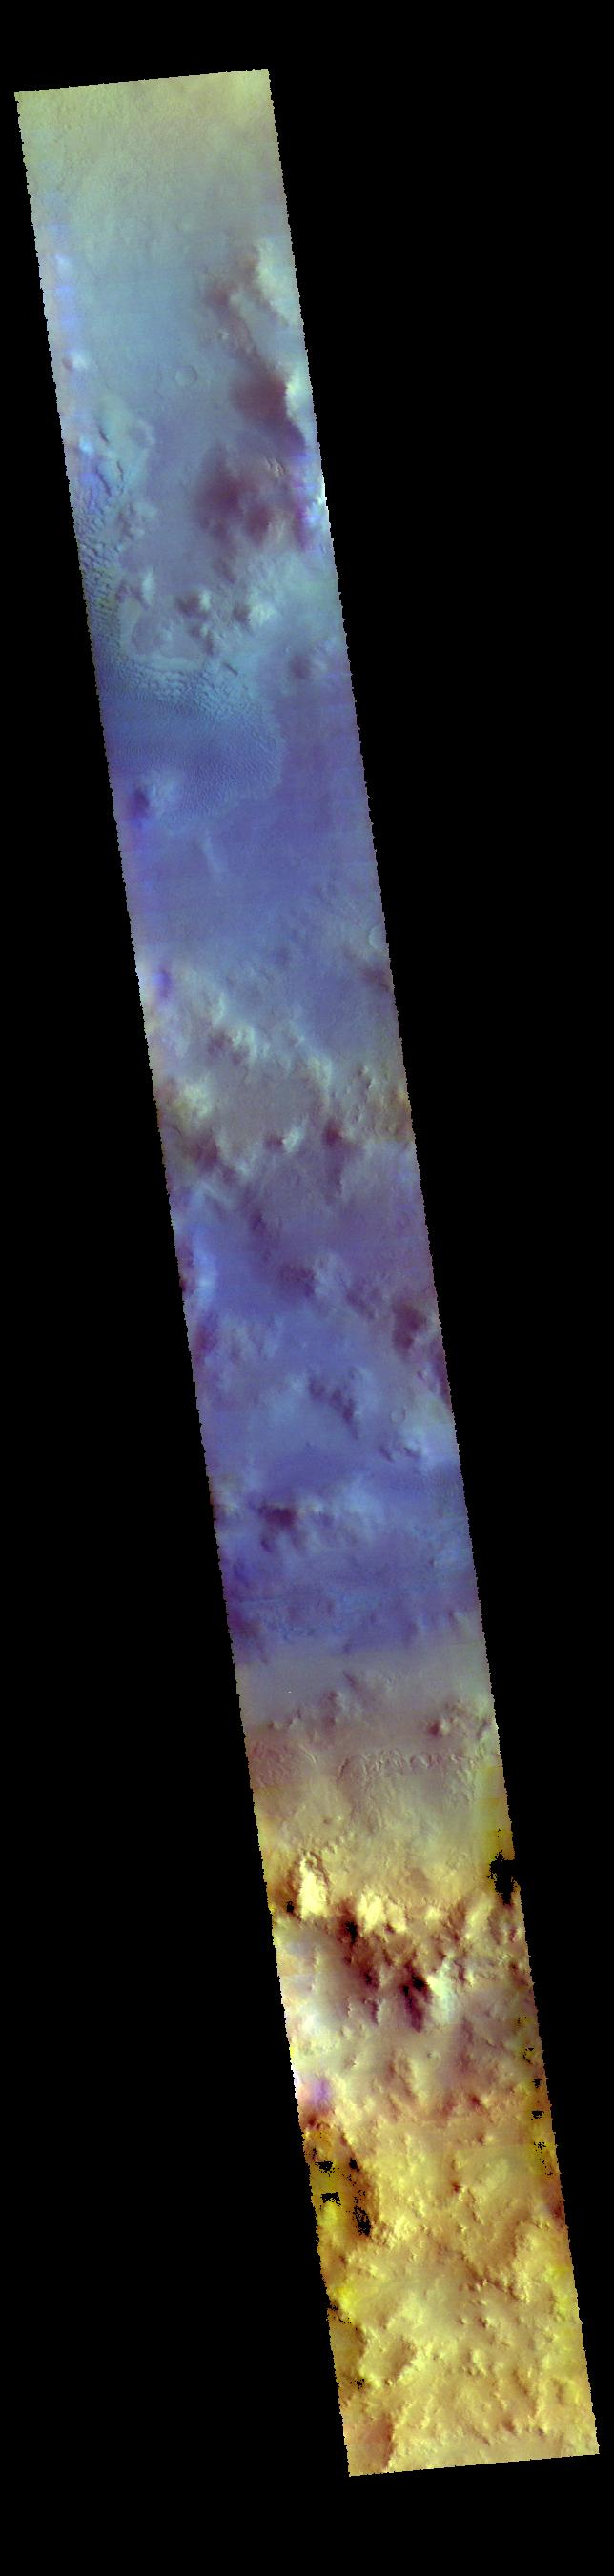 PIA22731: Lyot Crater - False Color